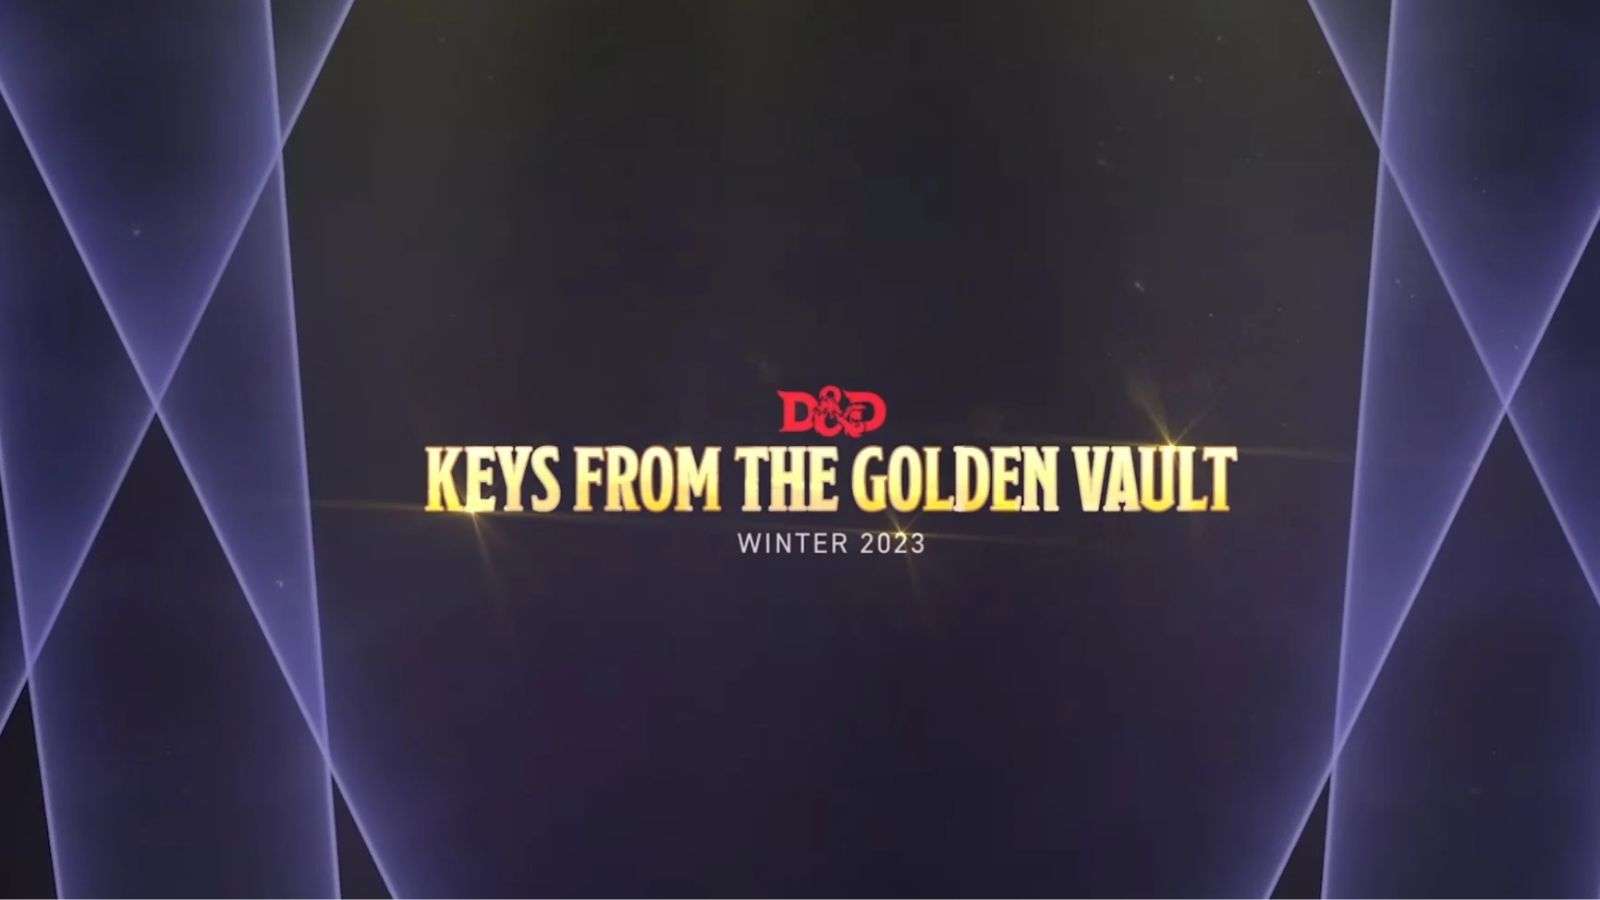 D&D Keys from the Golden Vault release date